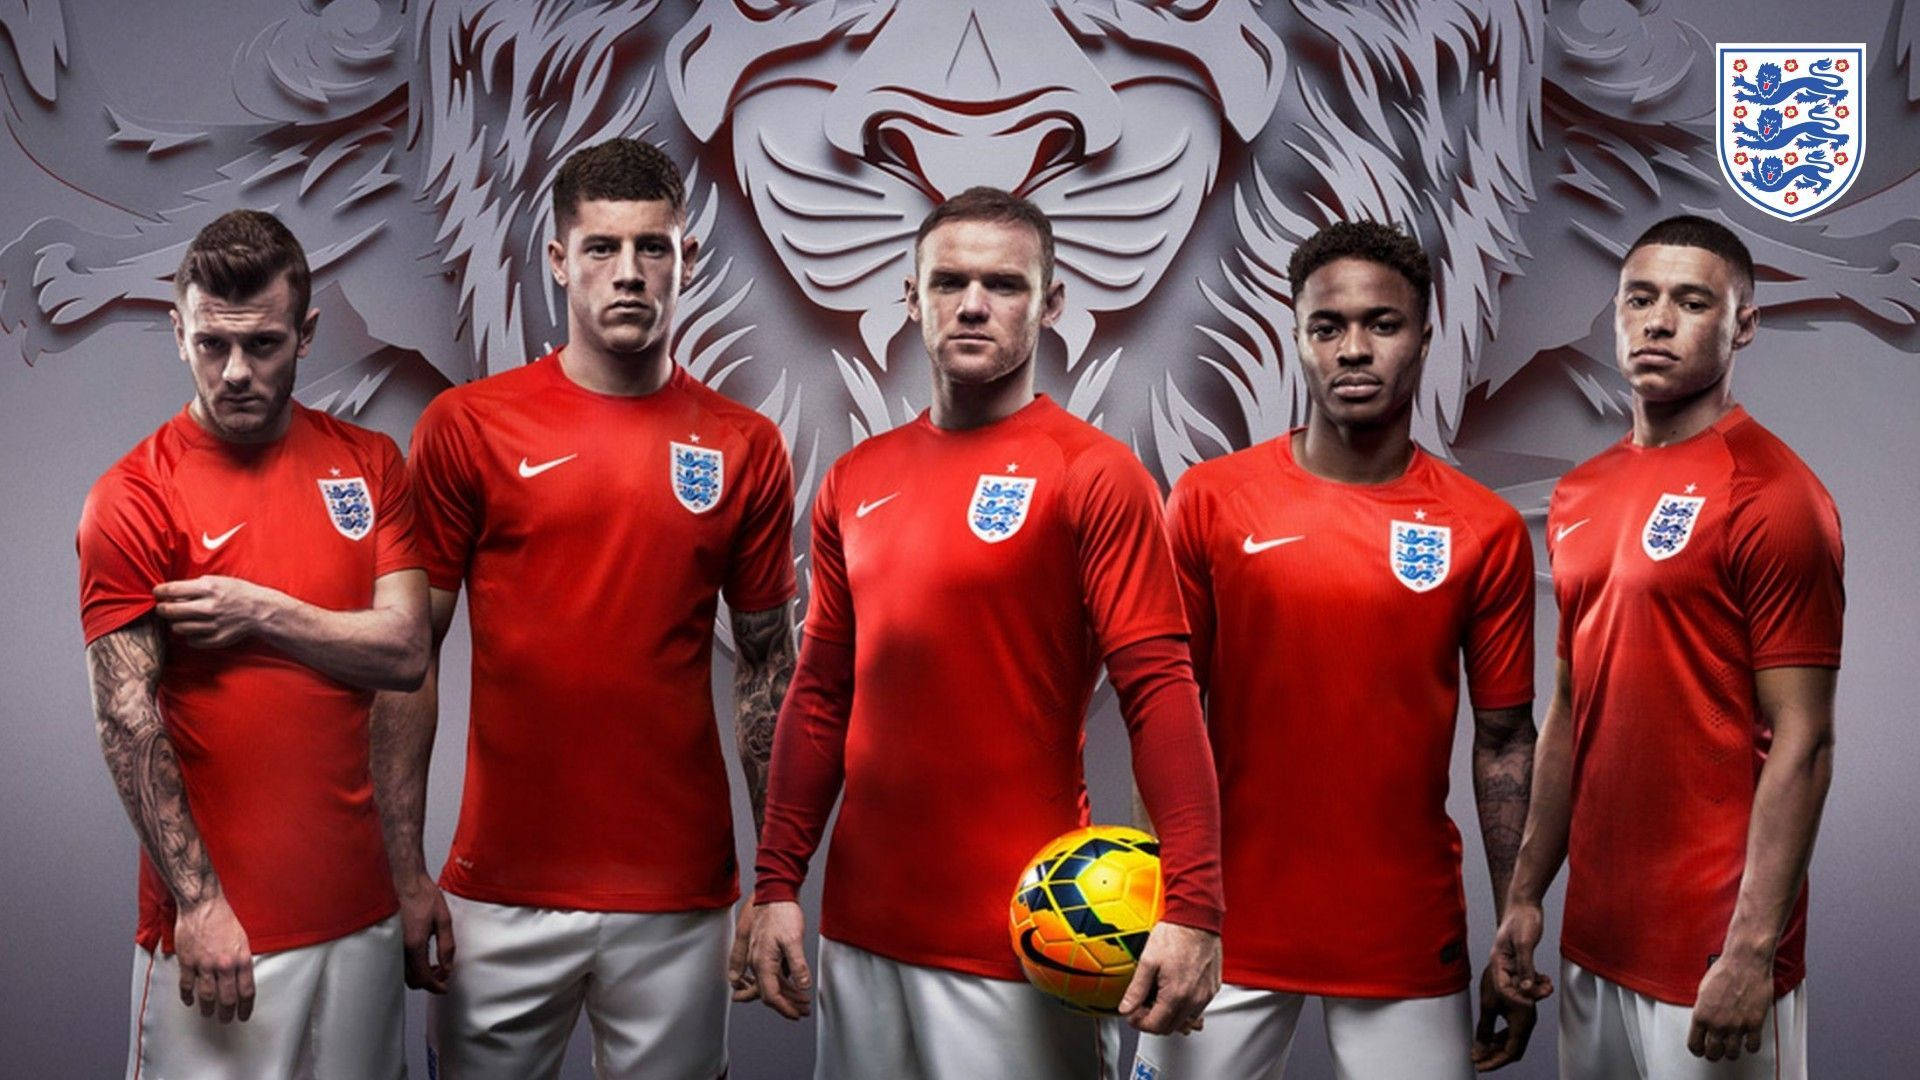 Futebolda Inglaterra Rooney Jersey Vermelho - Se Você É Um Fã De Futebol Da Inglaterra, Um Wallpaper Com A Camisa Vermelha Da Rooney Seria Uma Ótima Opção Para Personalizar O Seu Computador Ou Dispositivo Móvel. Papel de Parede